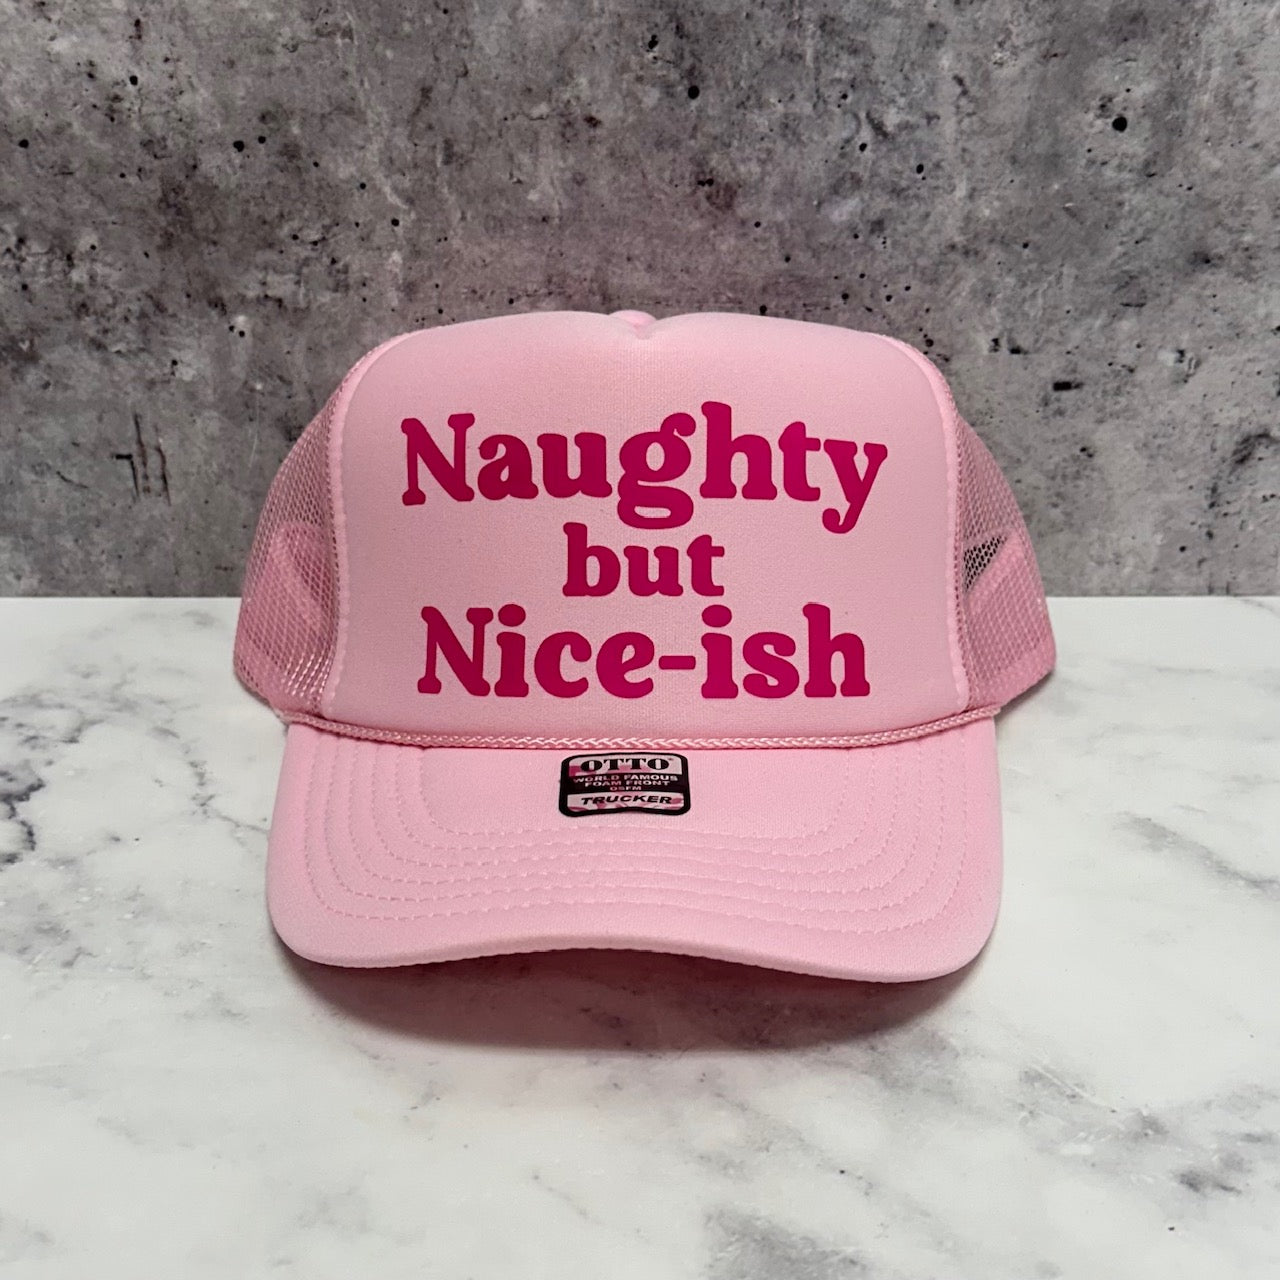 Naughty but Nice-ish Christmas Trucker Hat